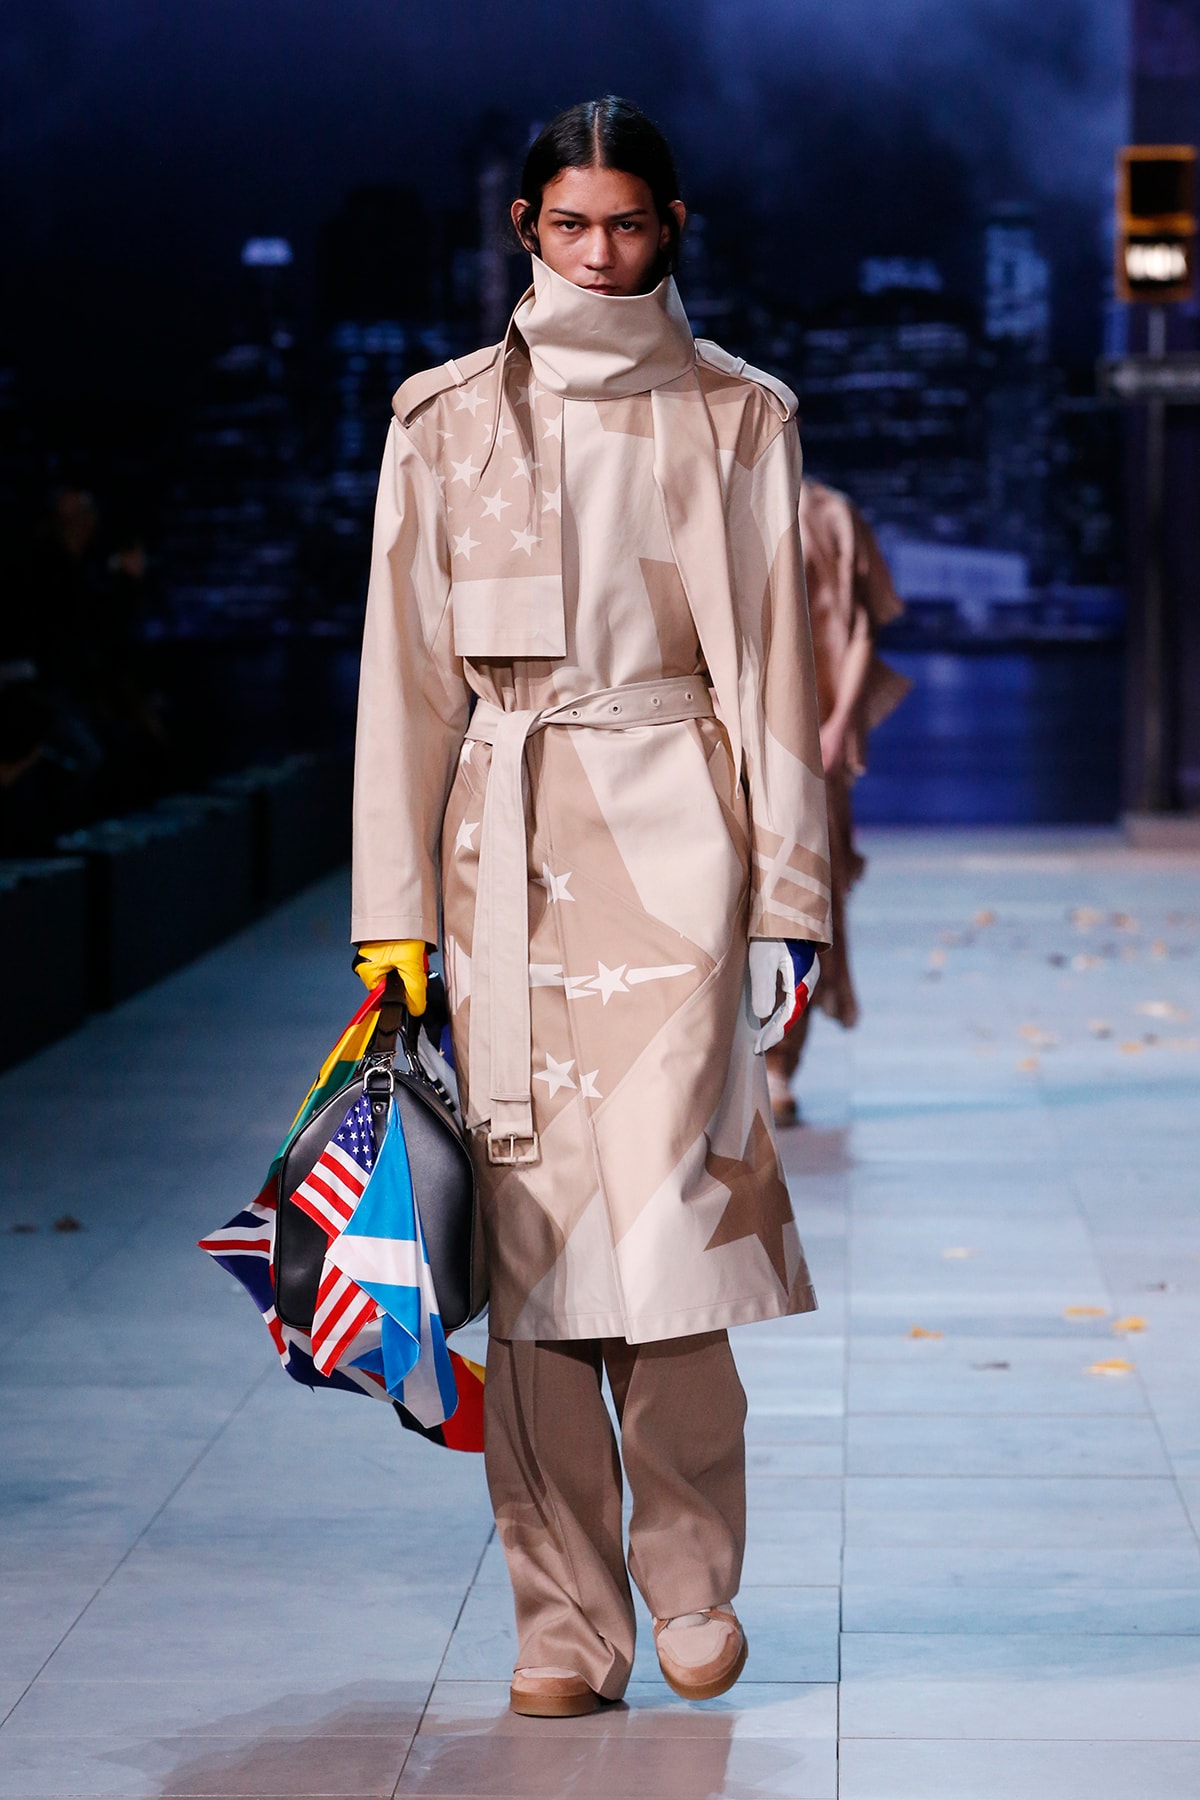 Little Miss Haute Couture: Authentication Class // Louis Vuitton